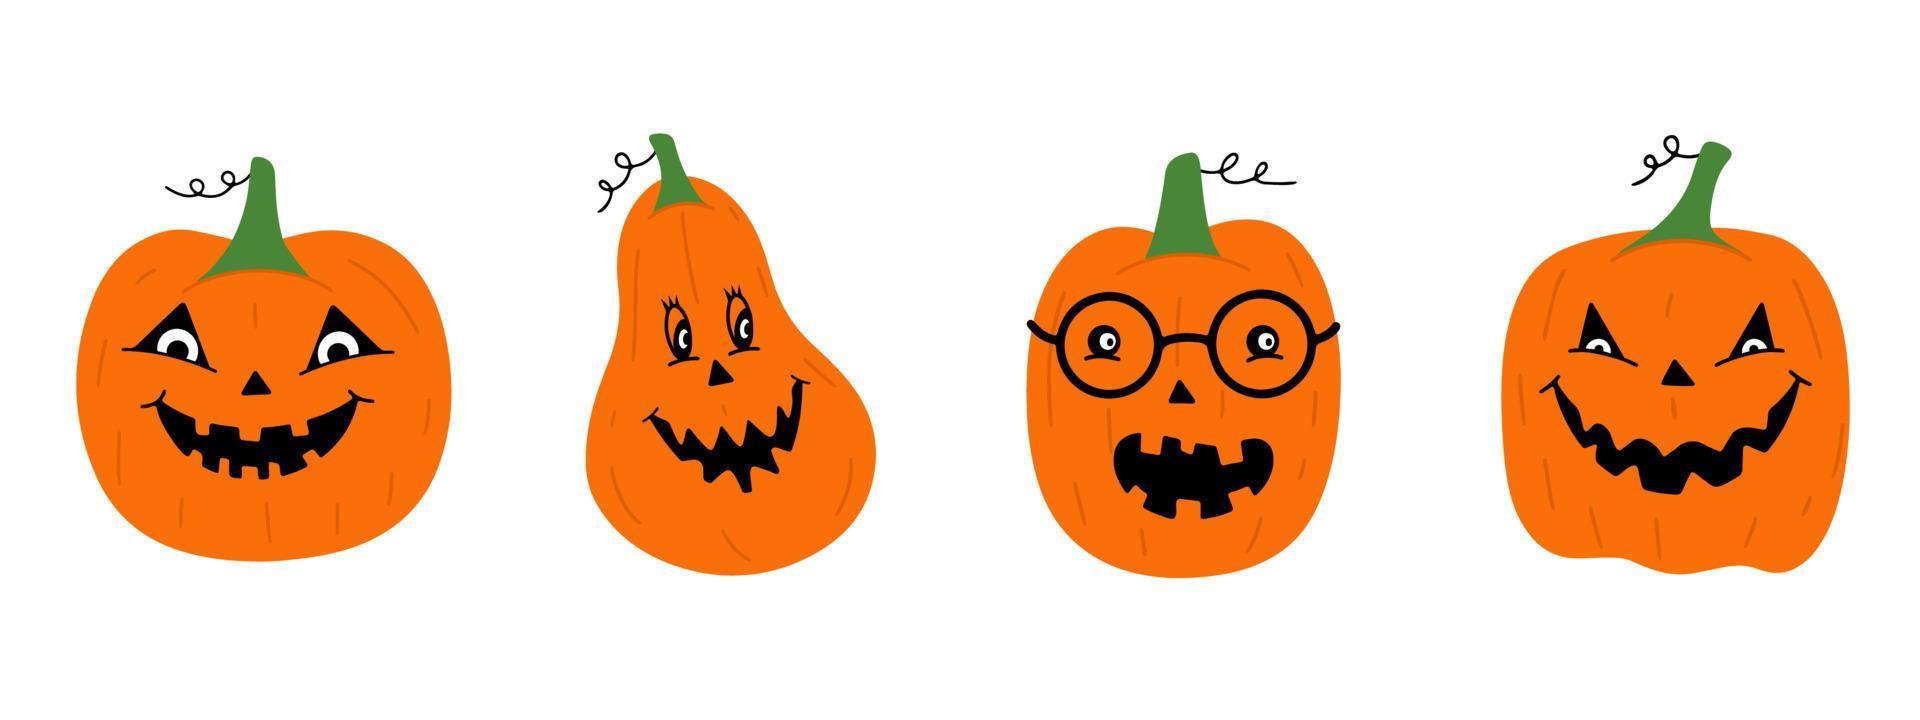 Reihe von Halloween-Kürbissen mit lustigen Gesichtern. Vektor-Illustration. Cartoon-Stil vektor